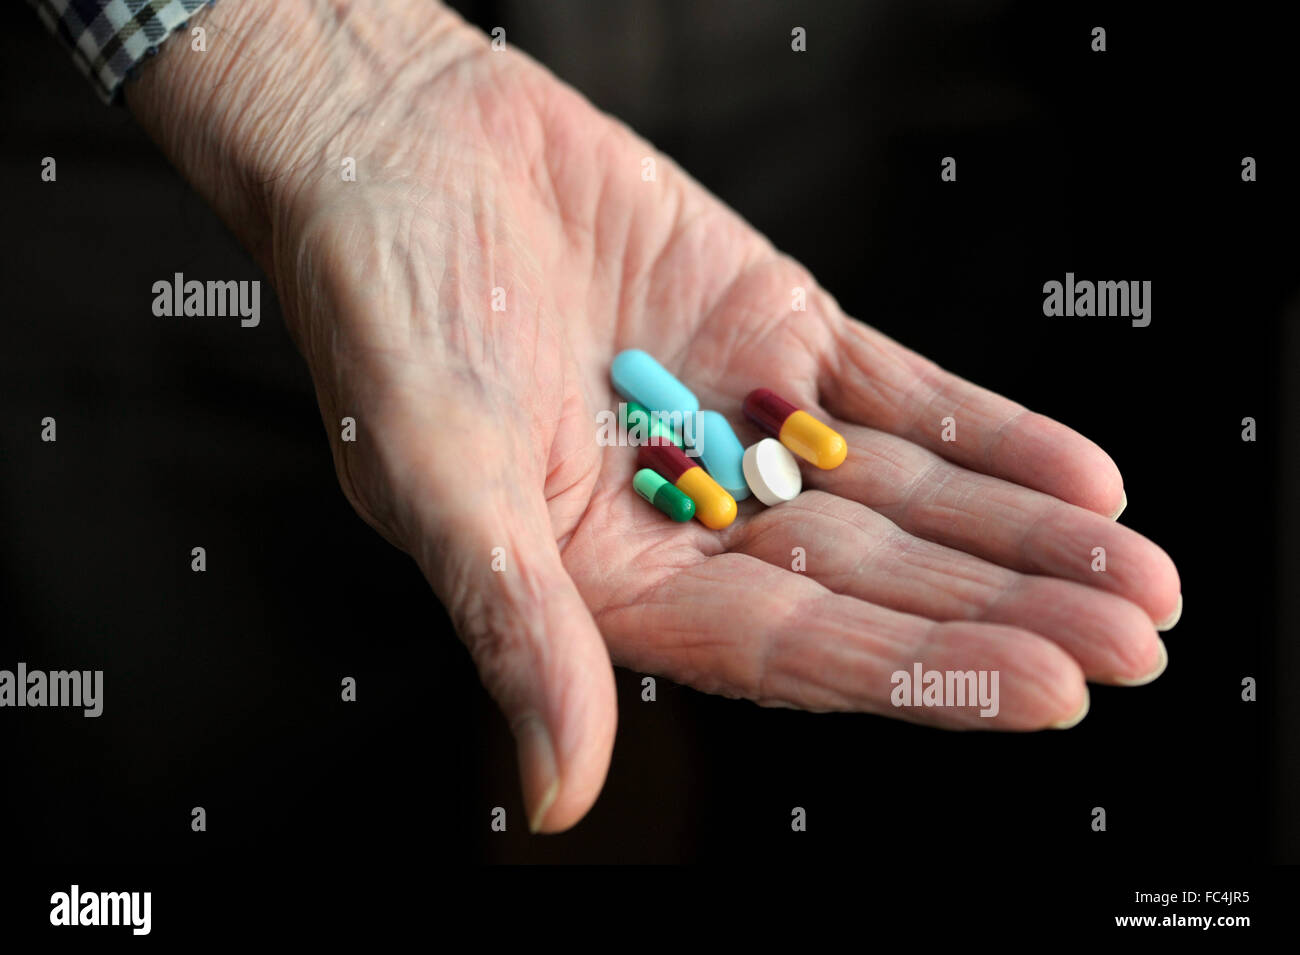 Vieille personne holding medicine, les médicaments dans la main. Banque D'Images